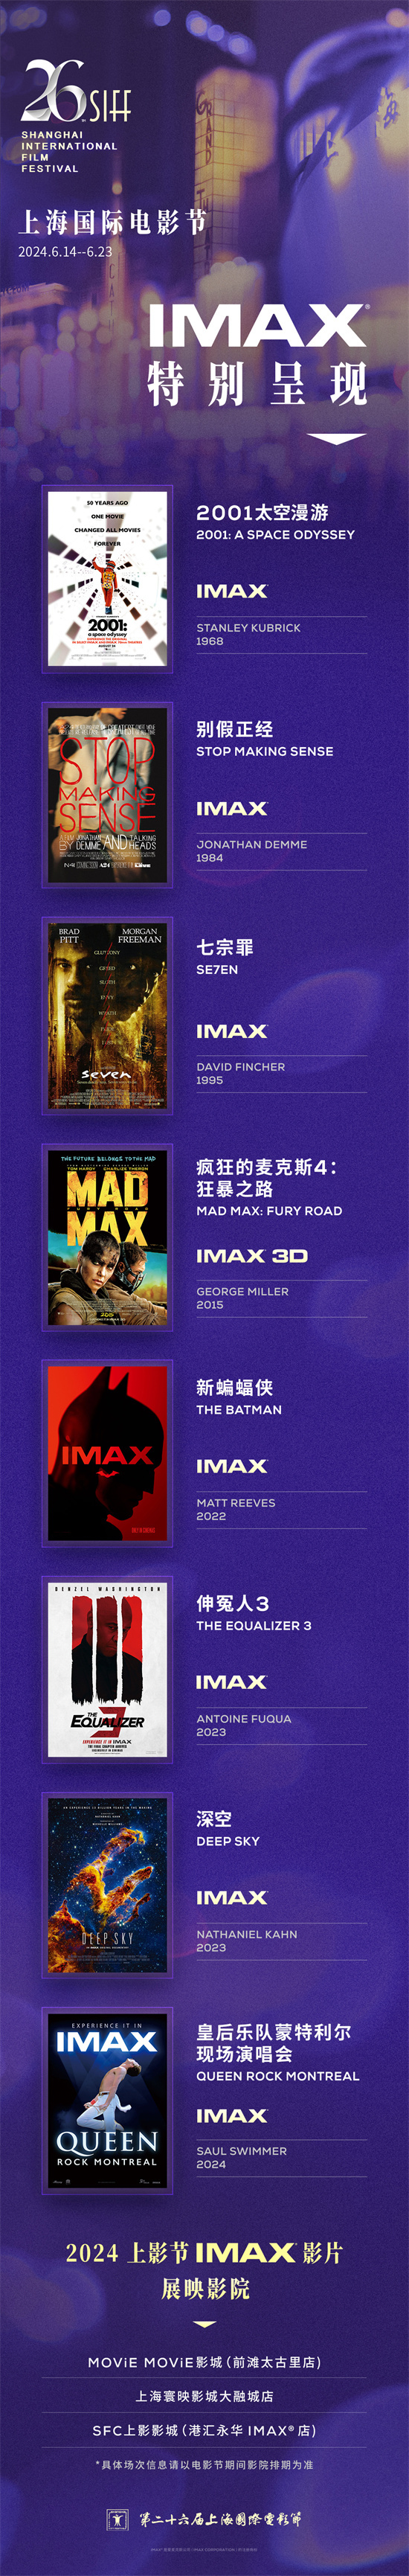 第26届上影节曝IMAX片单 八部佳作开启银幕盛宴